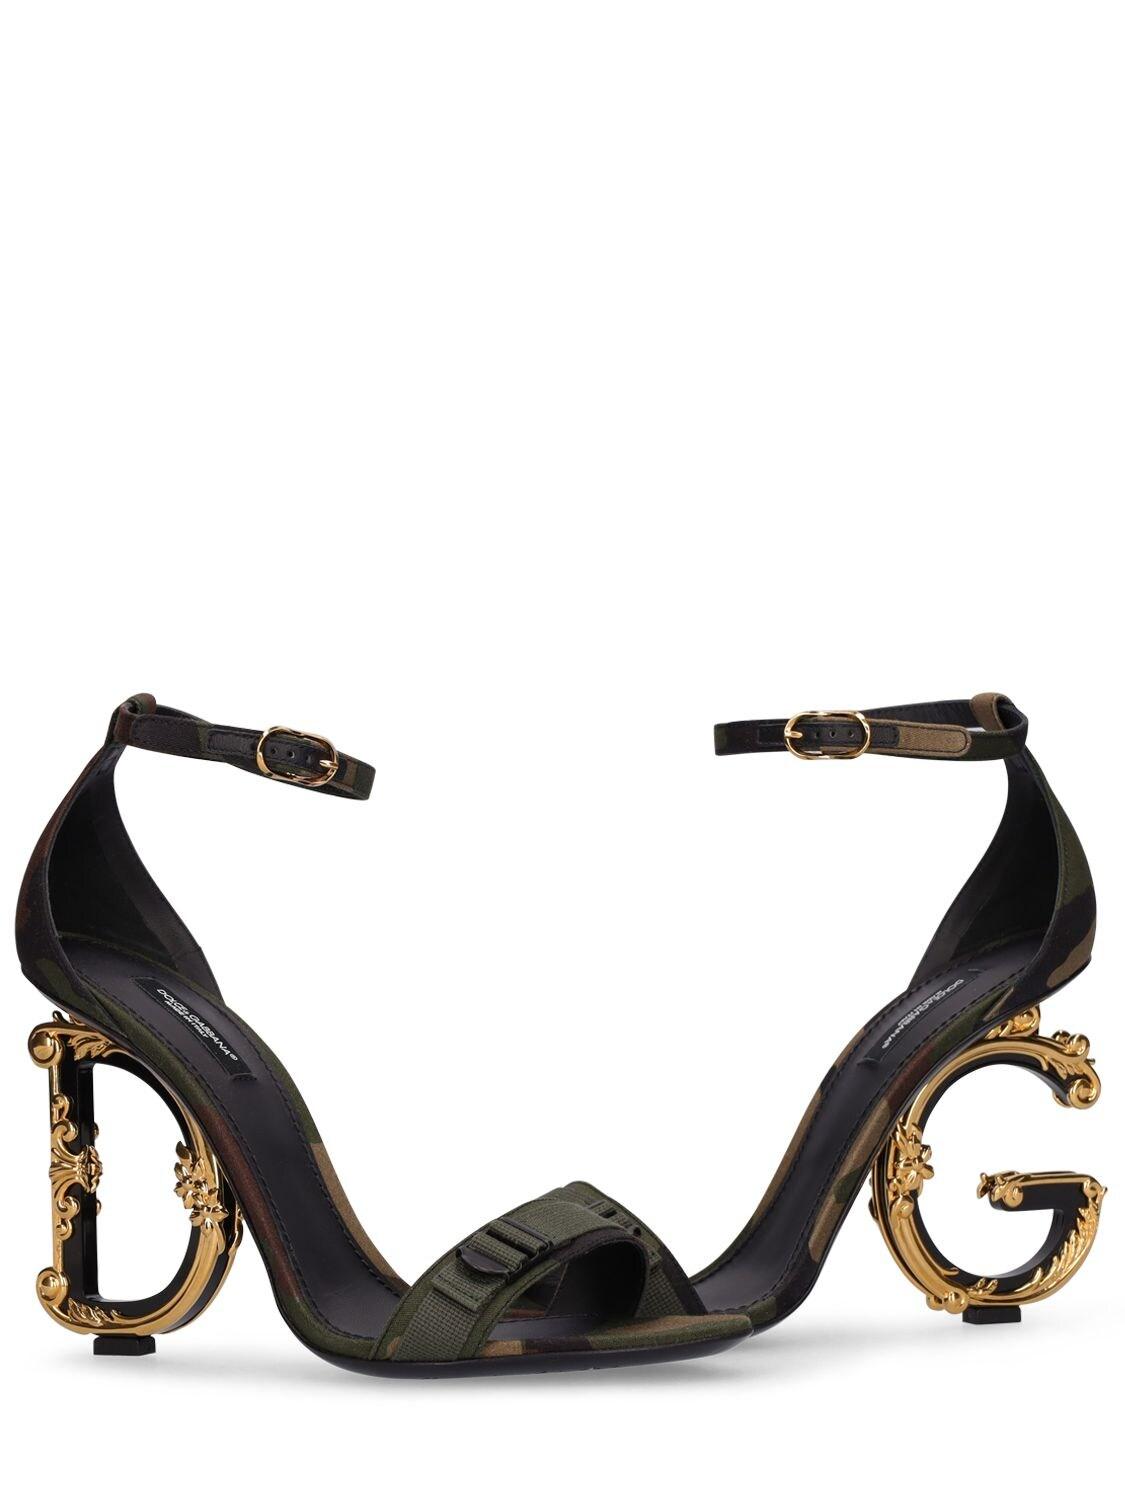 Dolce & Gabbana 105mm Dg Baroque Camouflage Sandals | Lyst